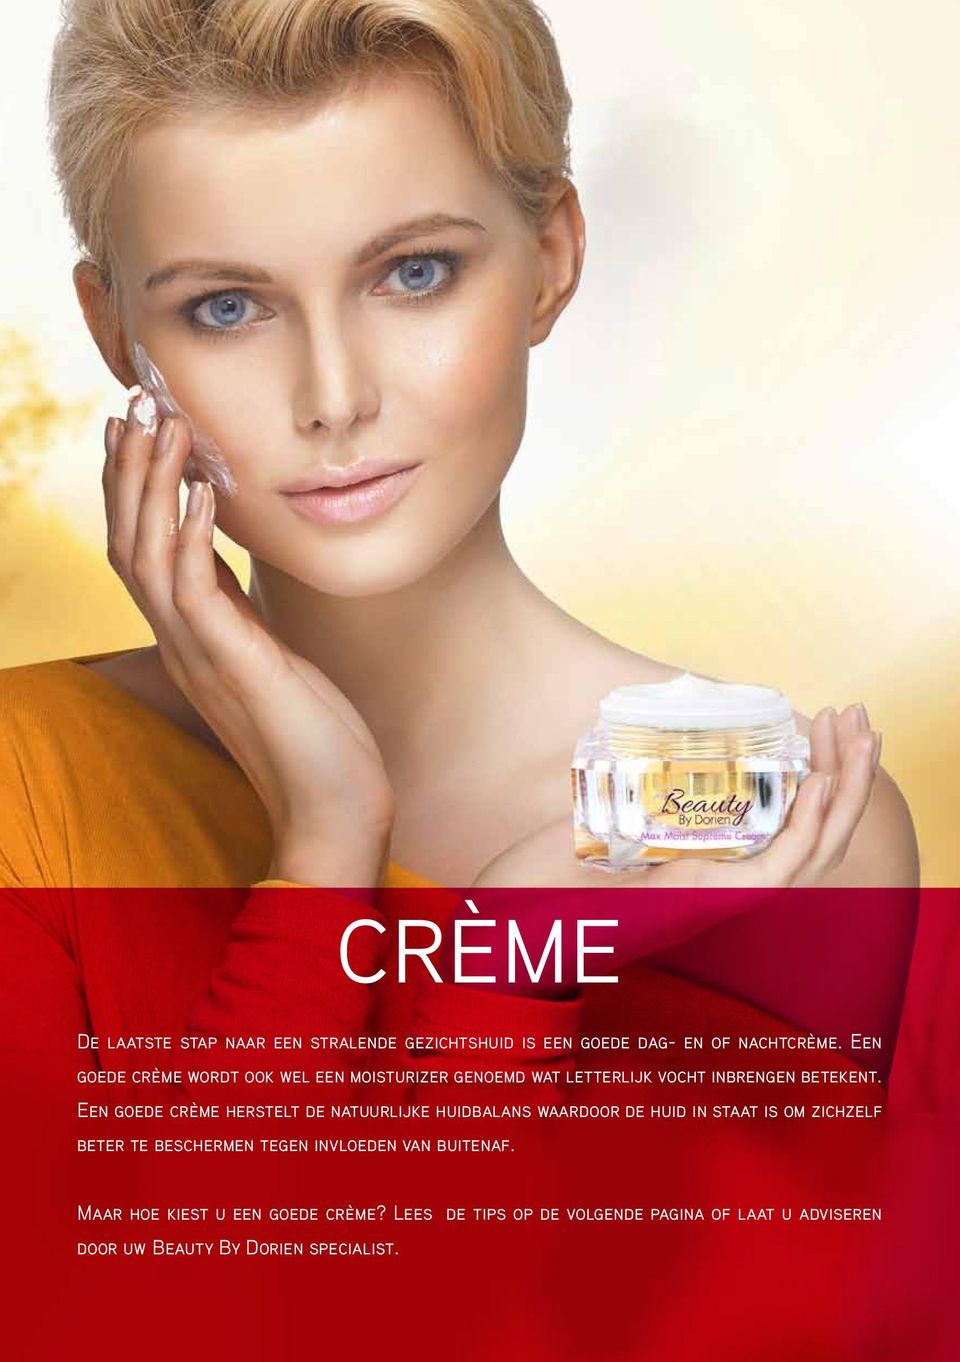 Een goede crème herstelt de natuurlijke huidbalans waardoor de huid in staat is om zichzelf beter te beschermen